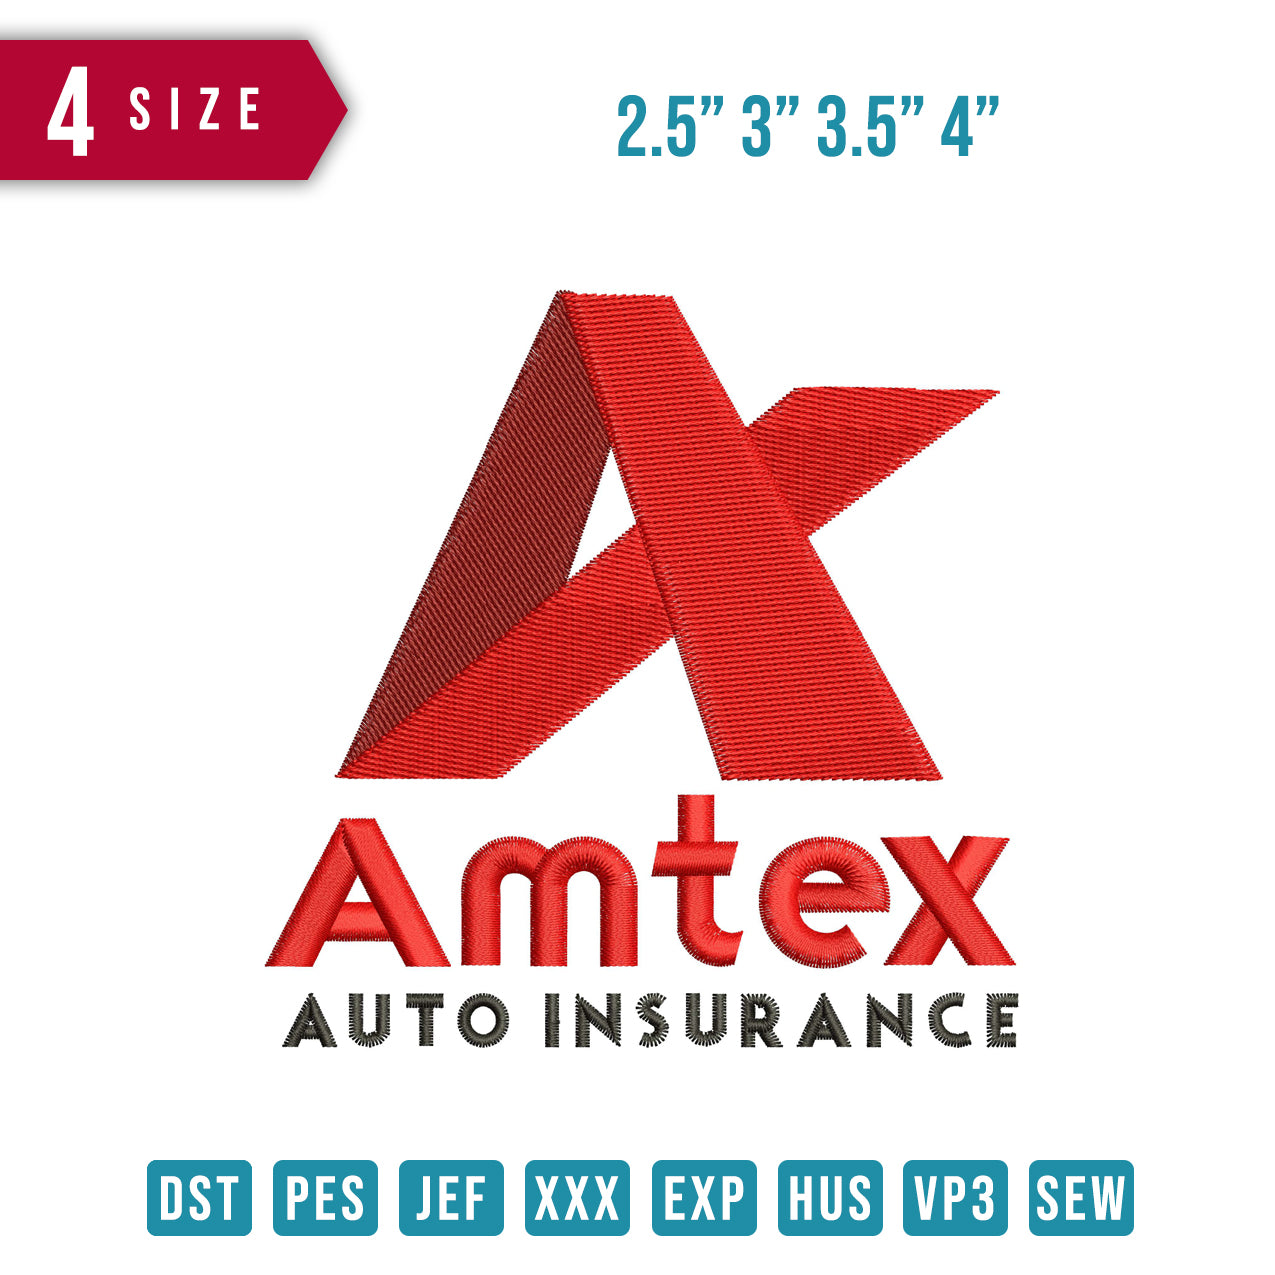 Amtex